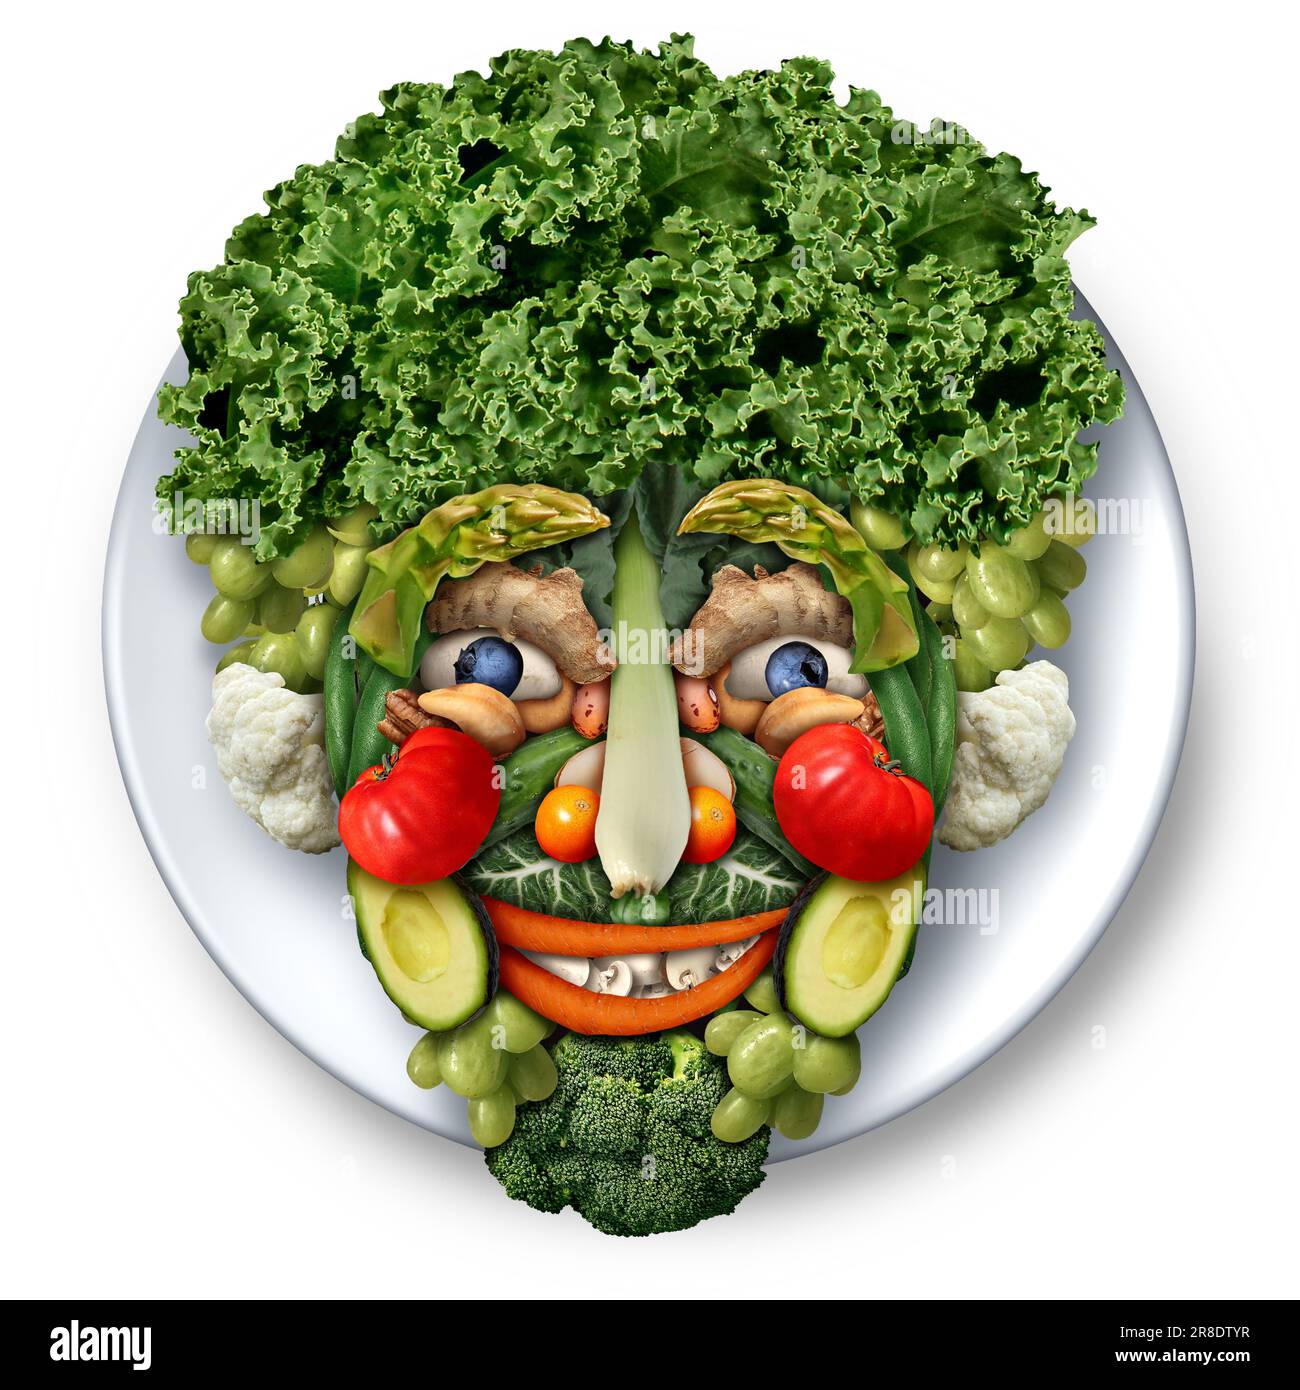 Alimento Escultura Cabeza como un arte comestible vegano o vegetariano o esculturas creativas de alimentos con forma de rostro. Foto de stock